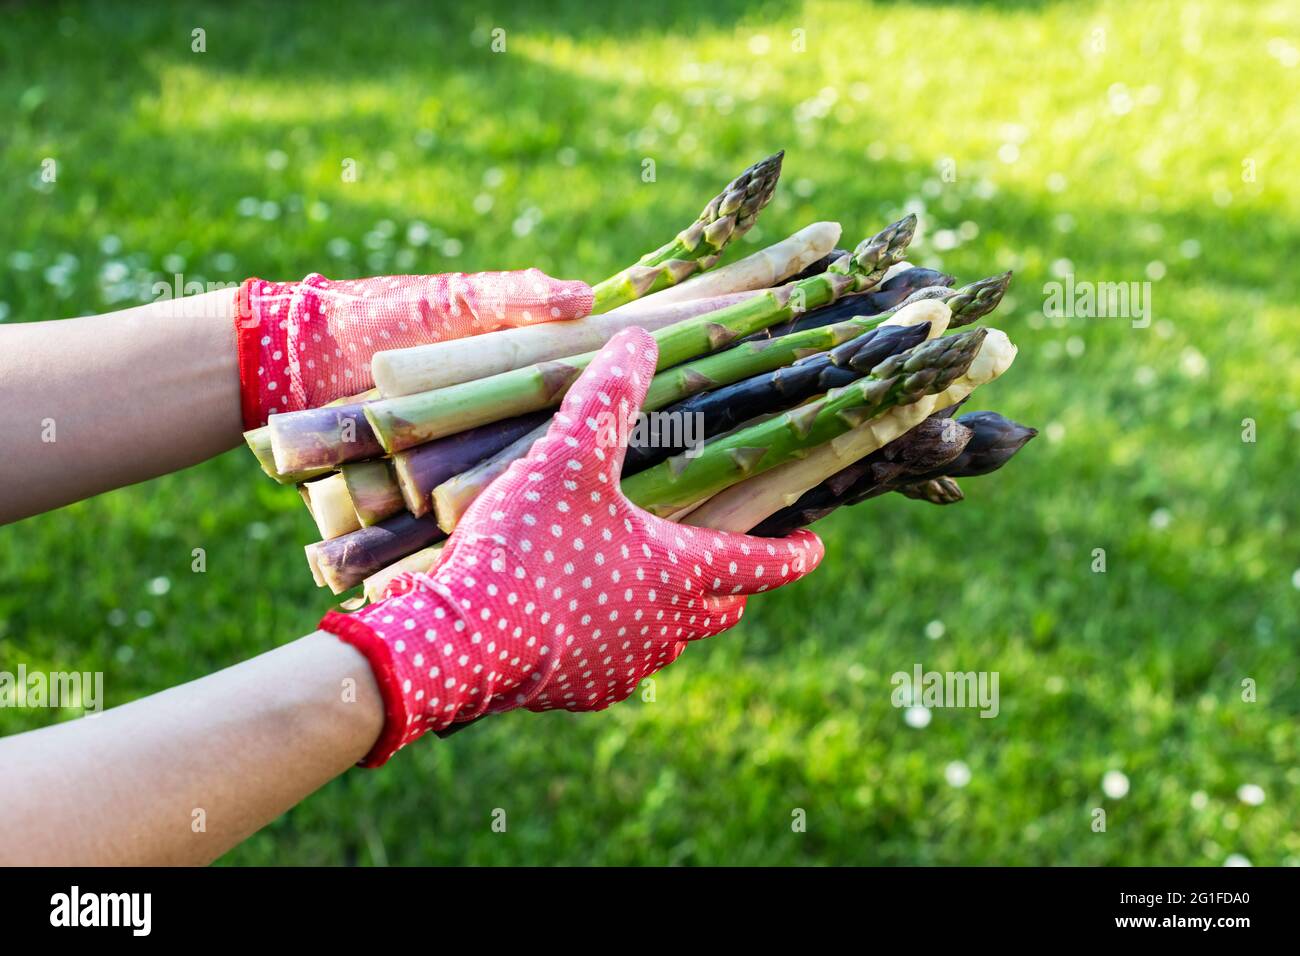 Spargel sprießt in den Händen eines Bauern auf grünem Gras Hintergrund. Frische grüne, violette und weiße Spargelsprossen. Food-Fotografie Stockfoto